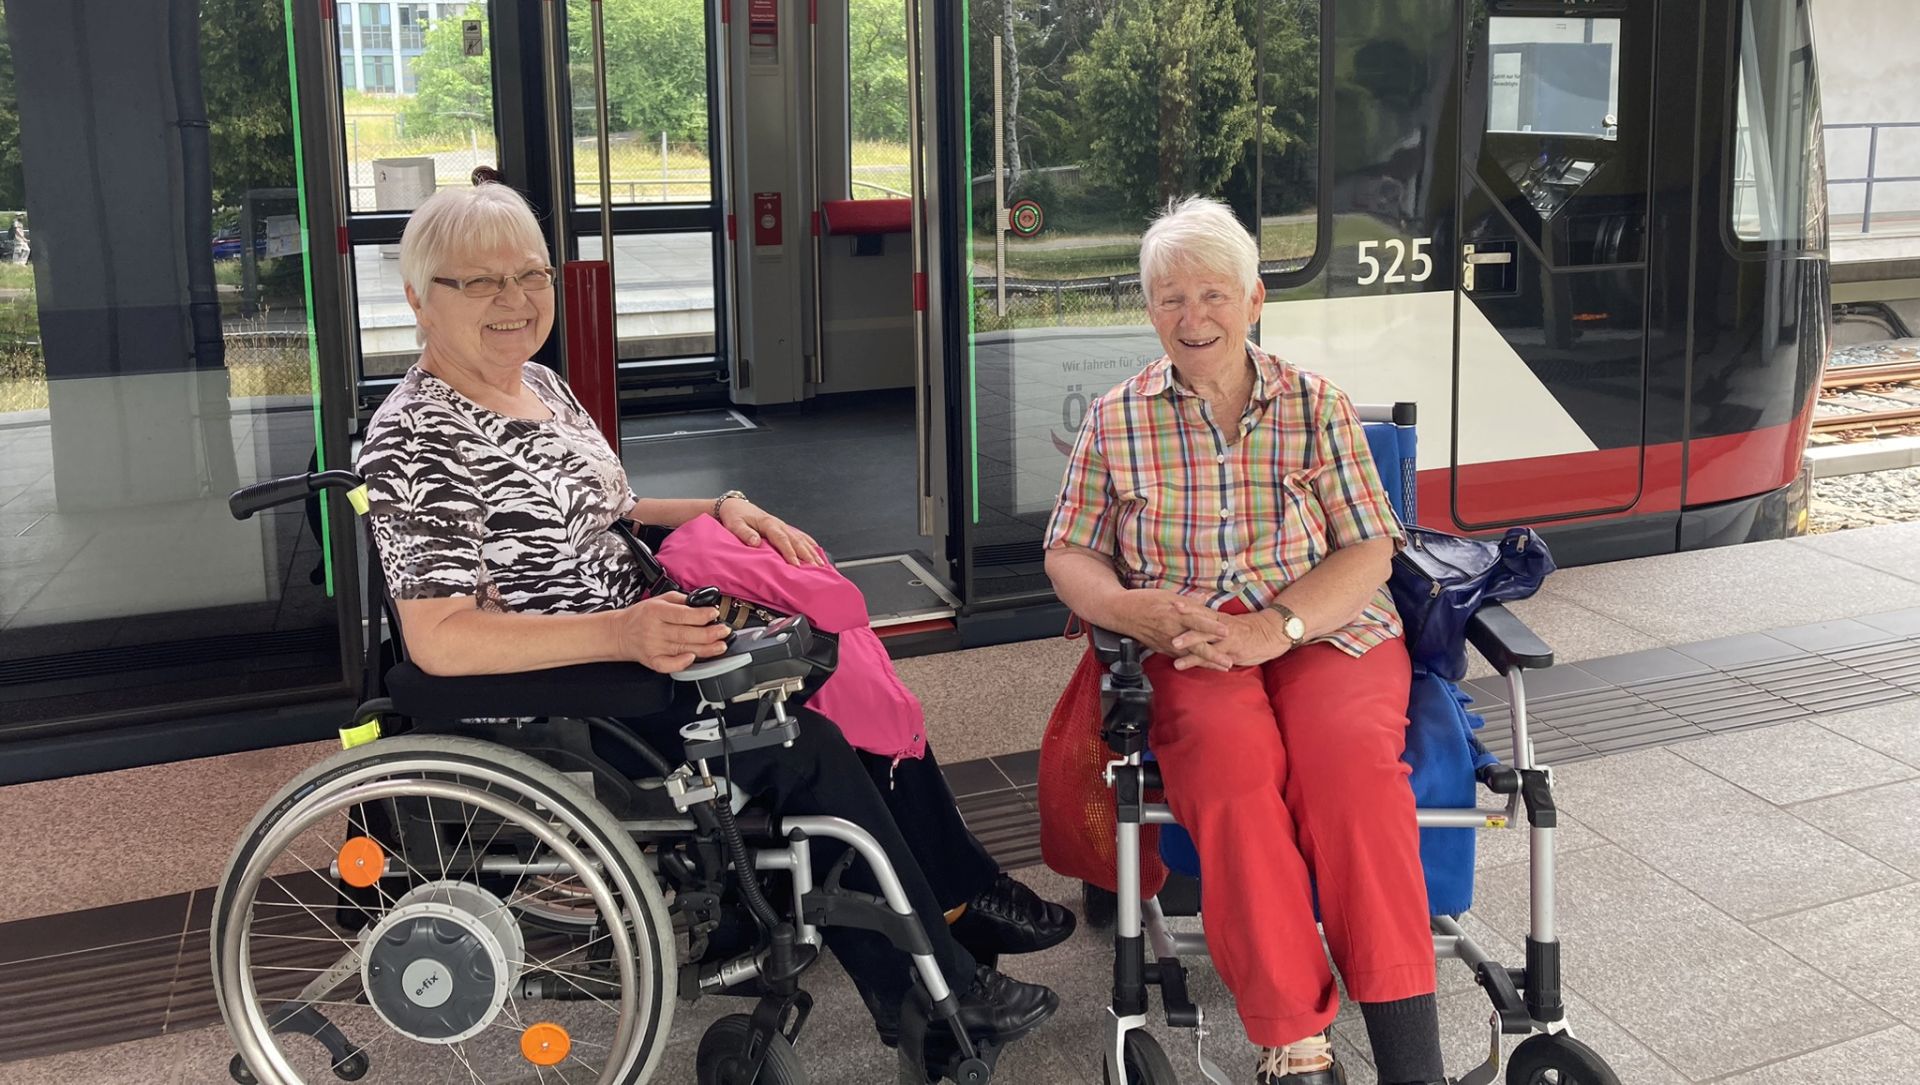 U-Bahn-Training mit Rollstuhl und Rollator: Selbstständig mobil sein, ist den beiden Damen trotz Einschränkung extrem wichtig.